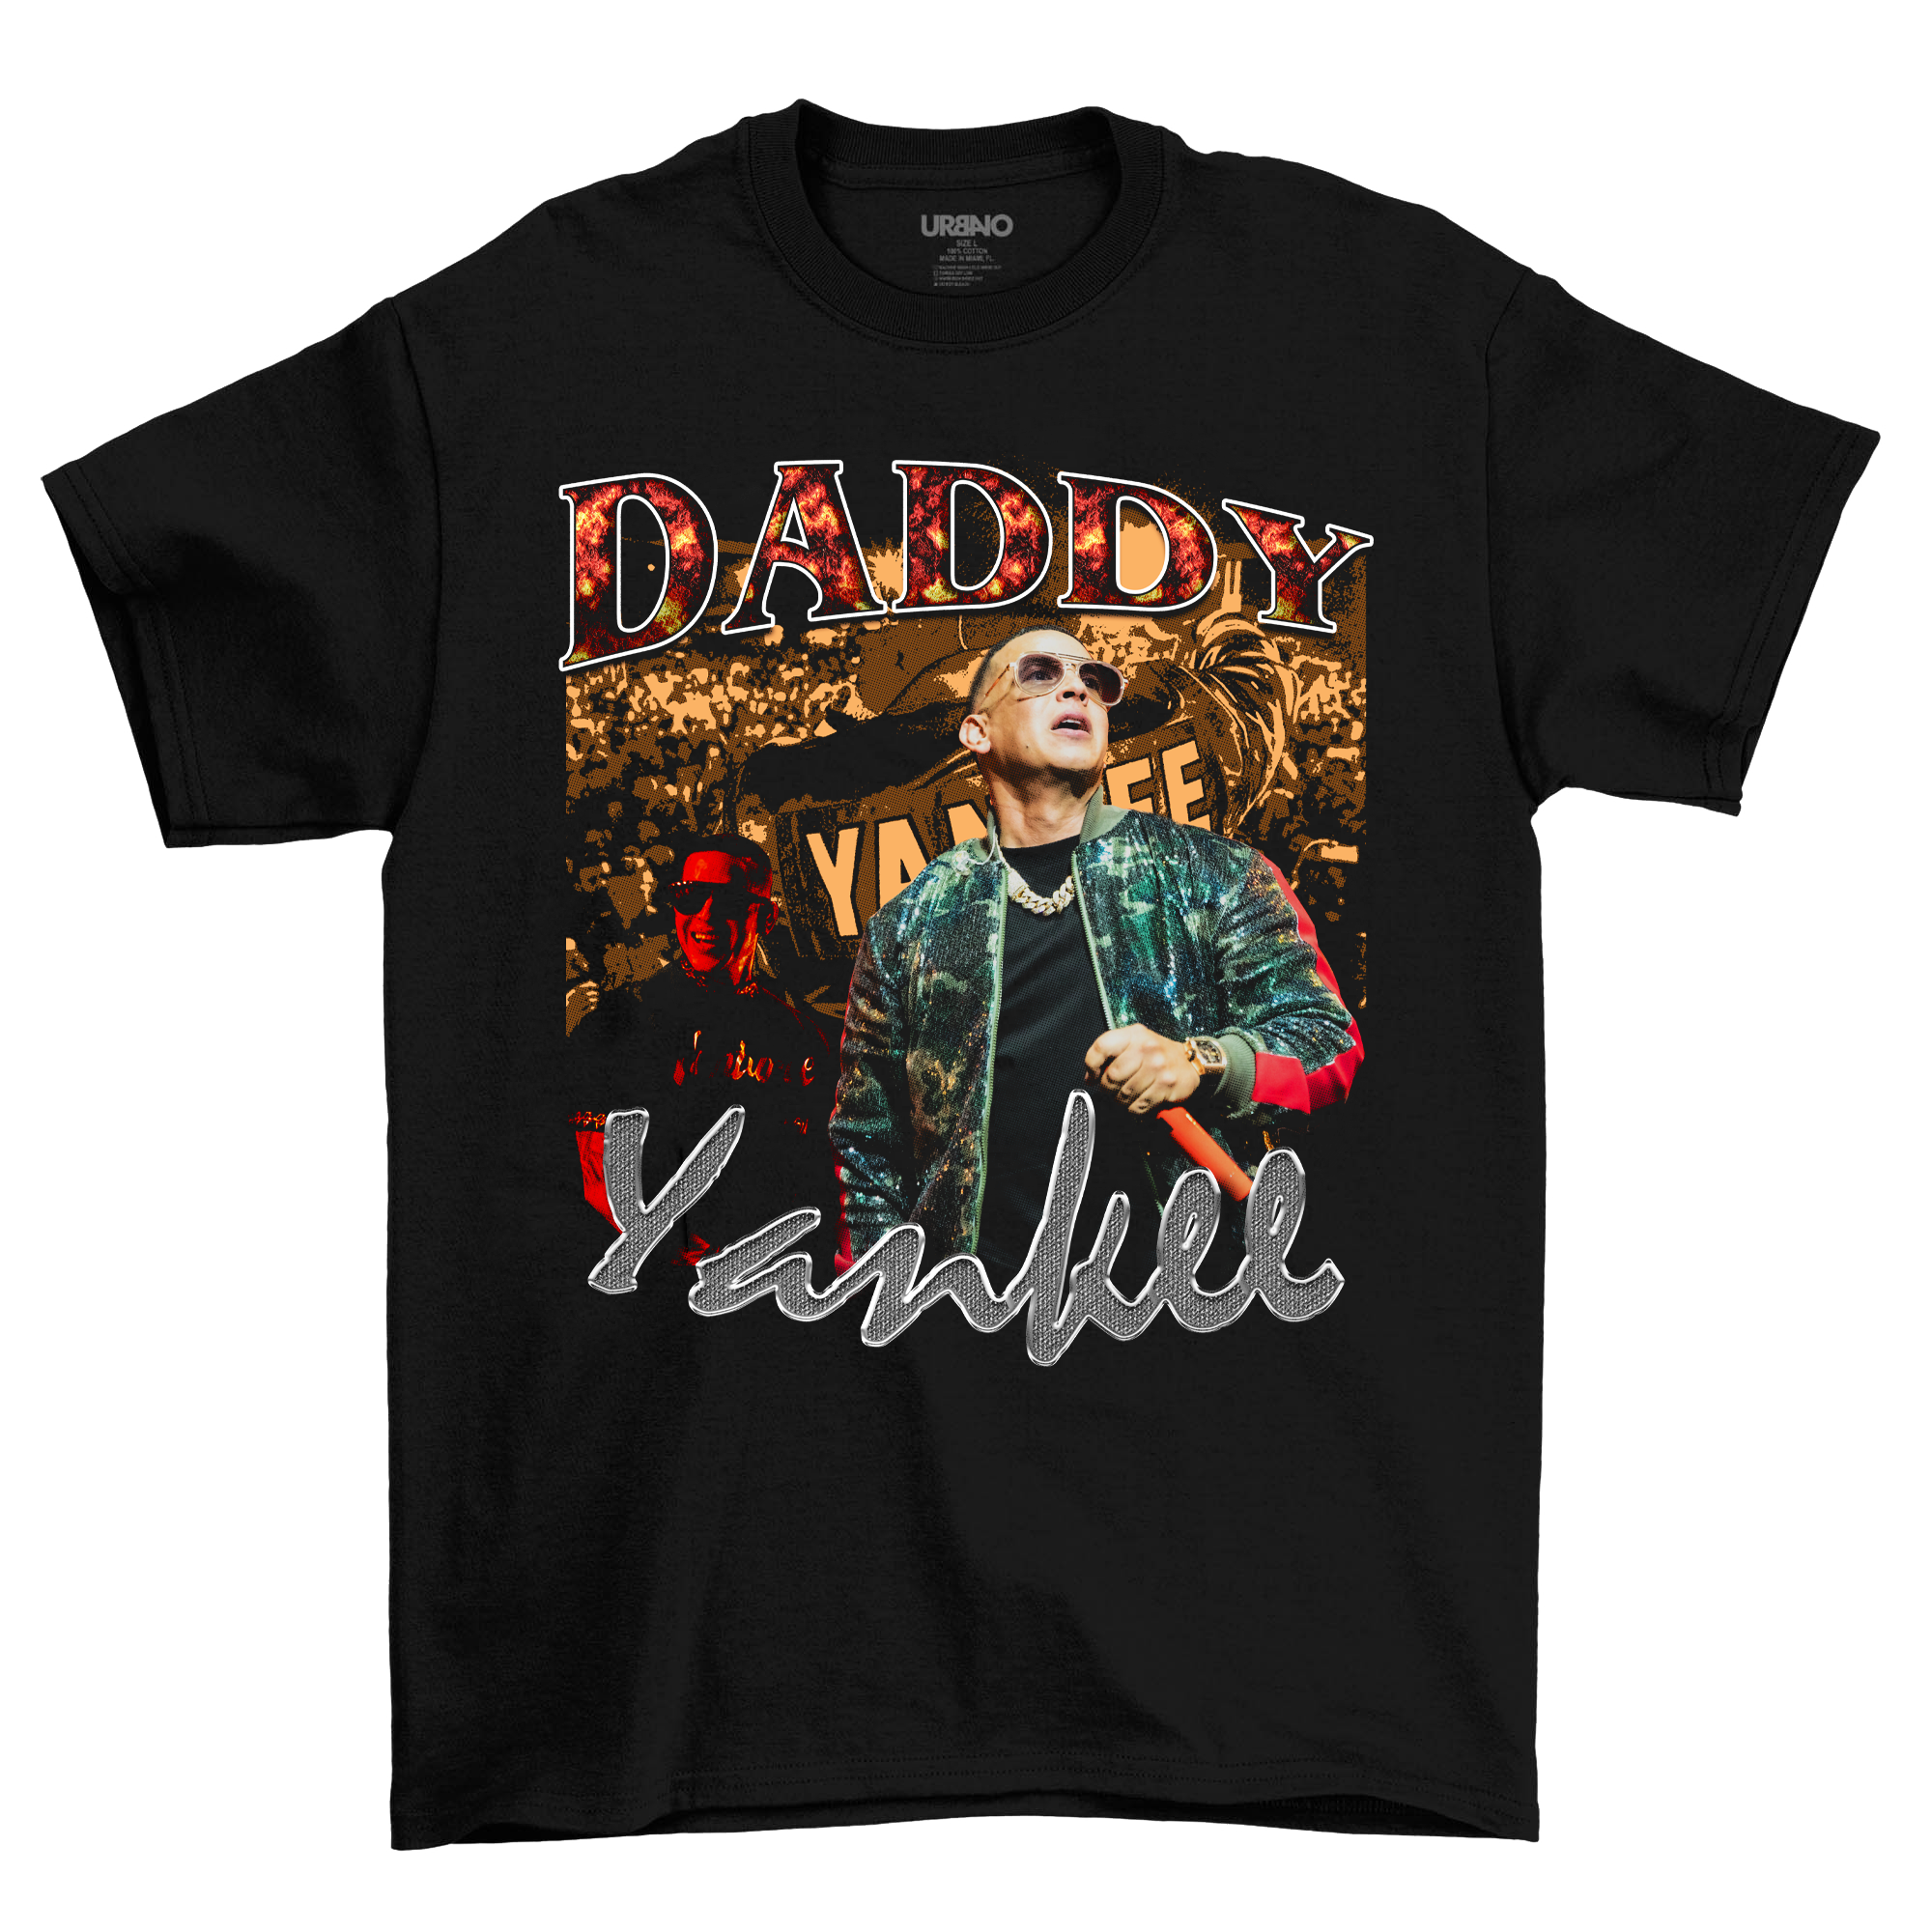 Daddy Yankee Bootleg Shirt